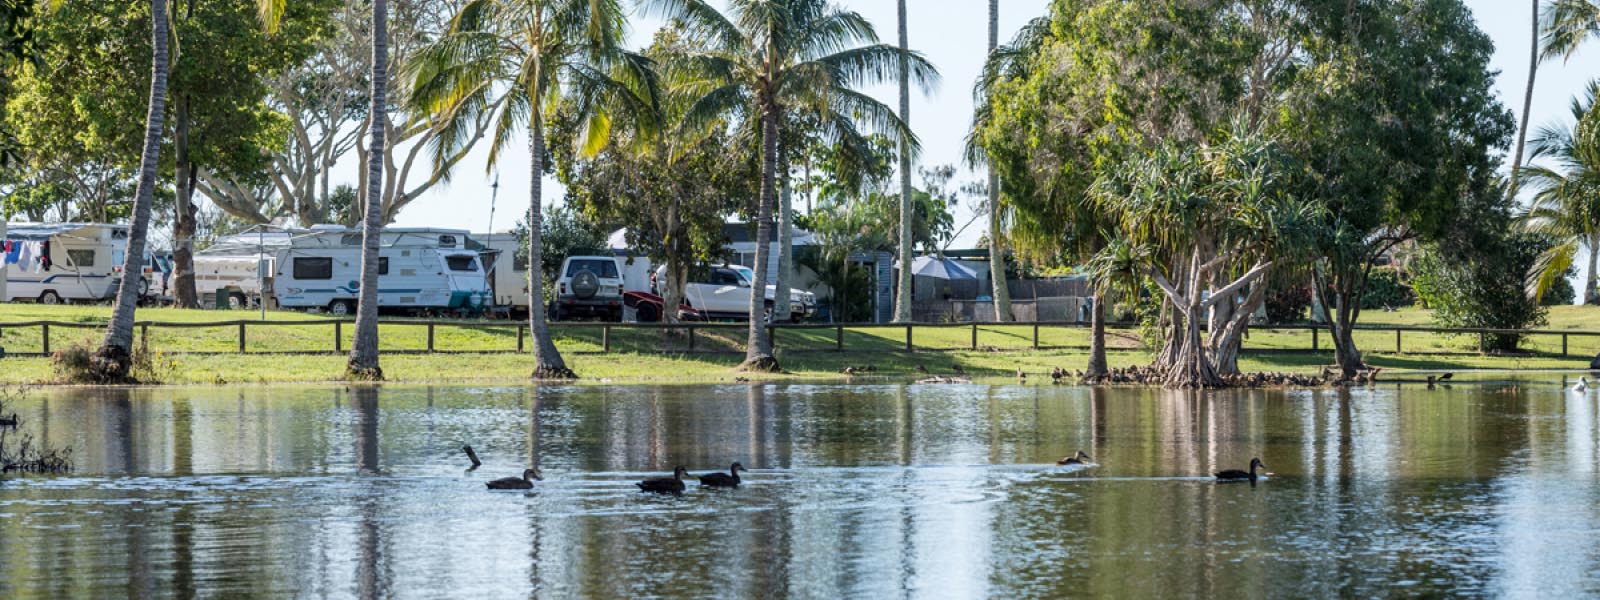 Caravan park by a pond web